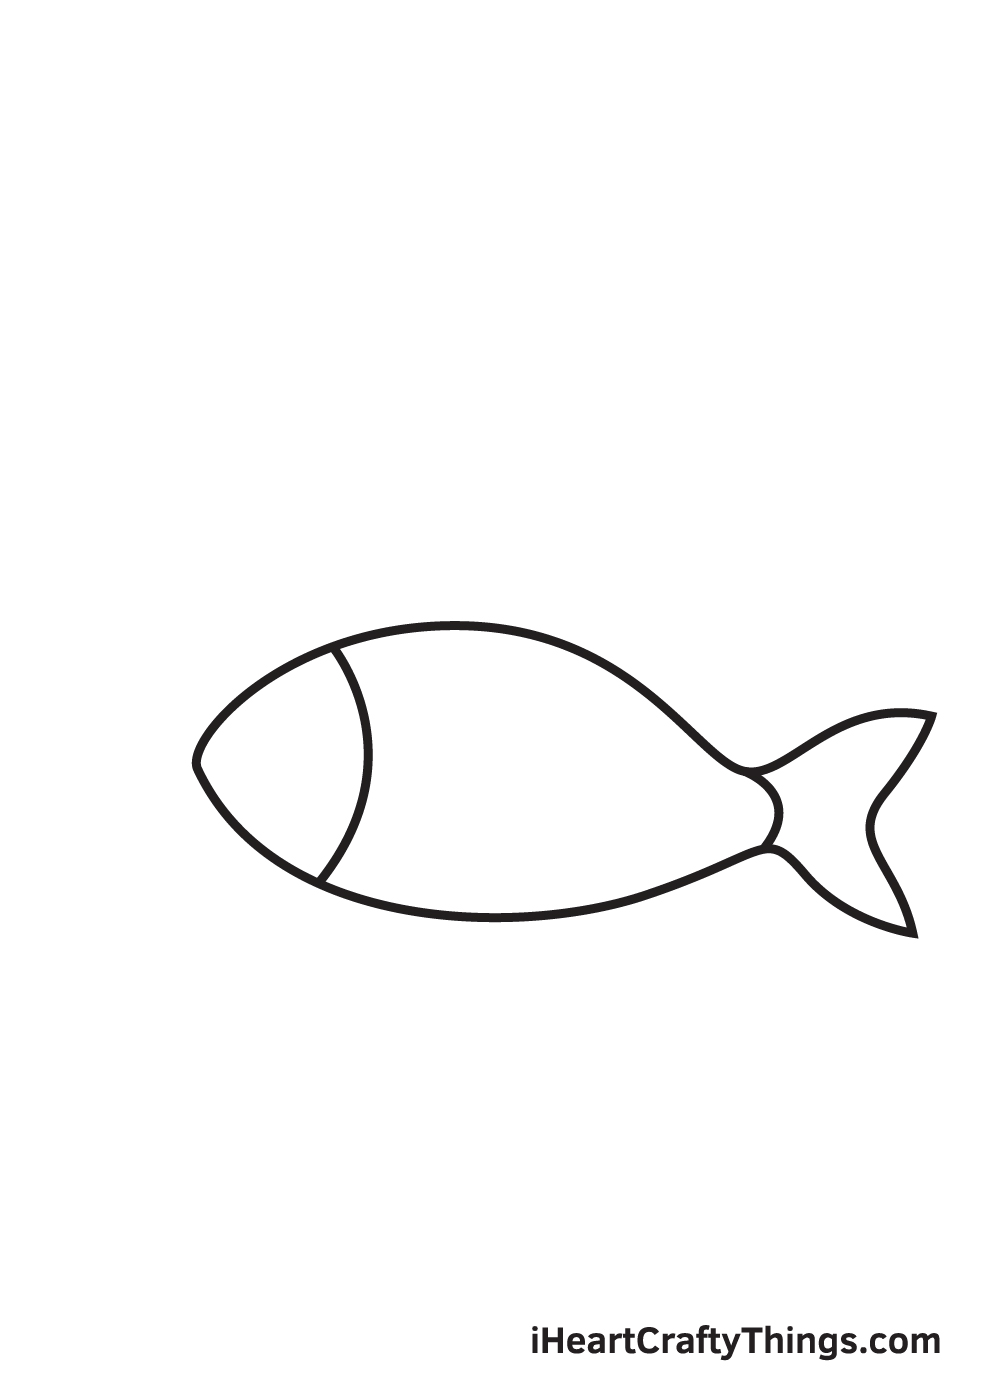 Vẽ con cá đơn giản không khó, hãy xem các bước vẽ trong hình ảnh và tạo ra một tác phẩm nghệ thuật đẹp mắt cho riêng bạn. Hãy thử sức với phương pháp vẽ đơn giản và dễ dàng trong bức tranh.